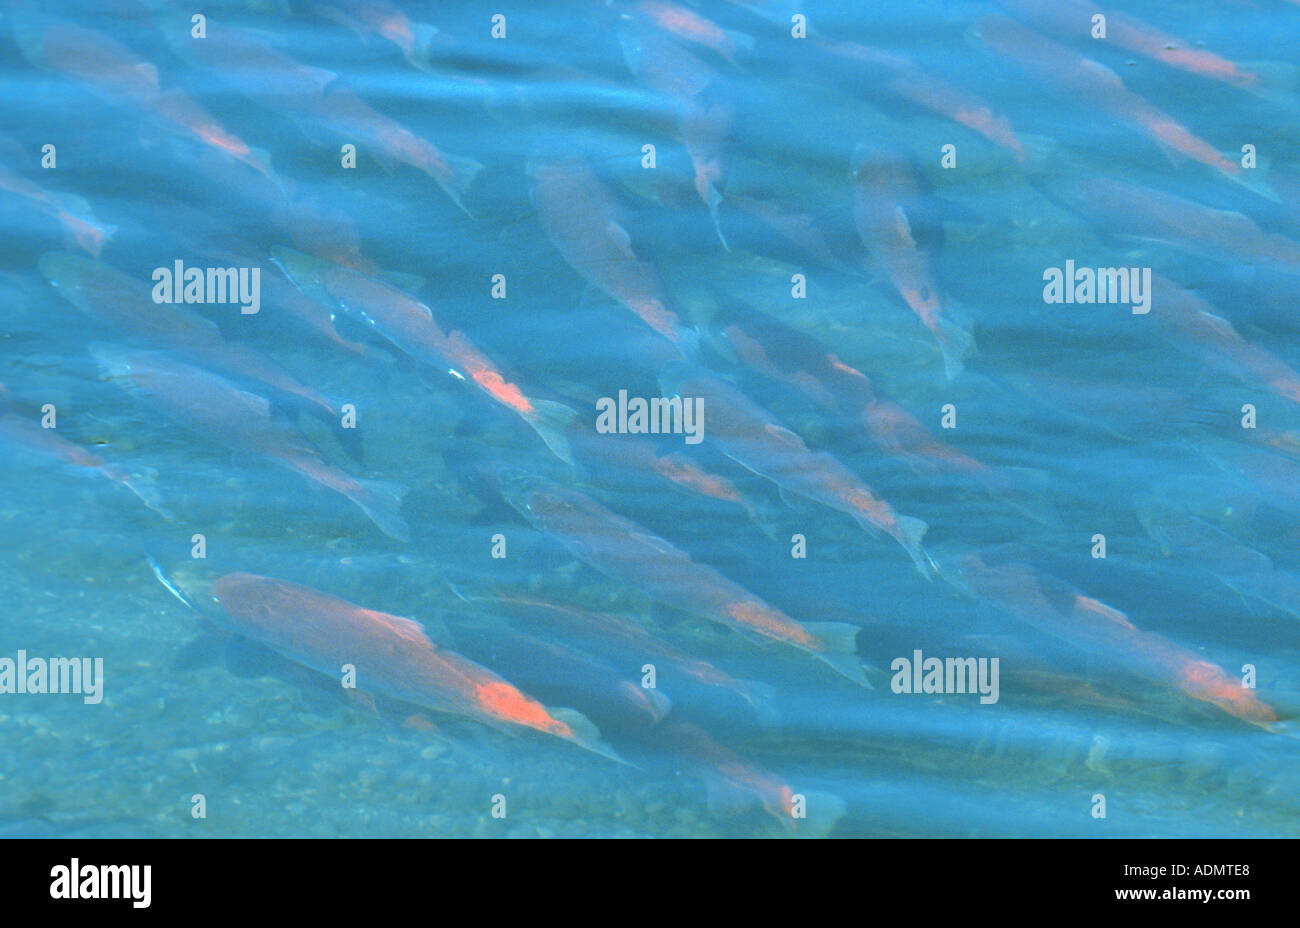 Le saumon rouge, le saumon rouge, le saumon rouge, bleu (Oncorhynchus nerka), les poissons en période de reproduction de l'essaim dans la rivière Brooks, USA, Alask Banque D'Images